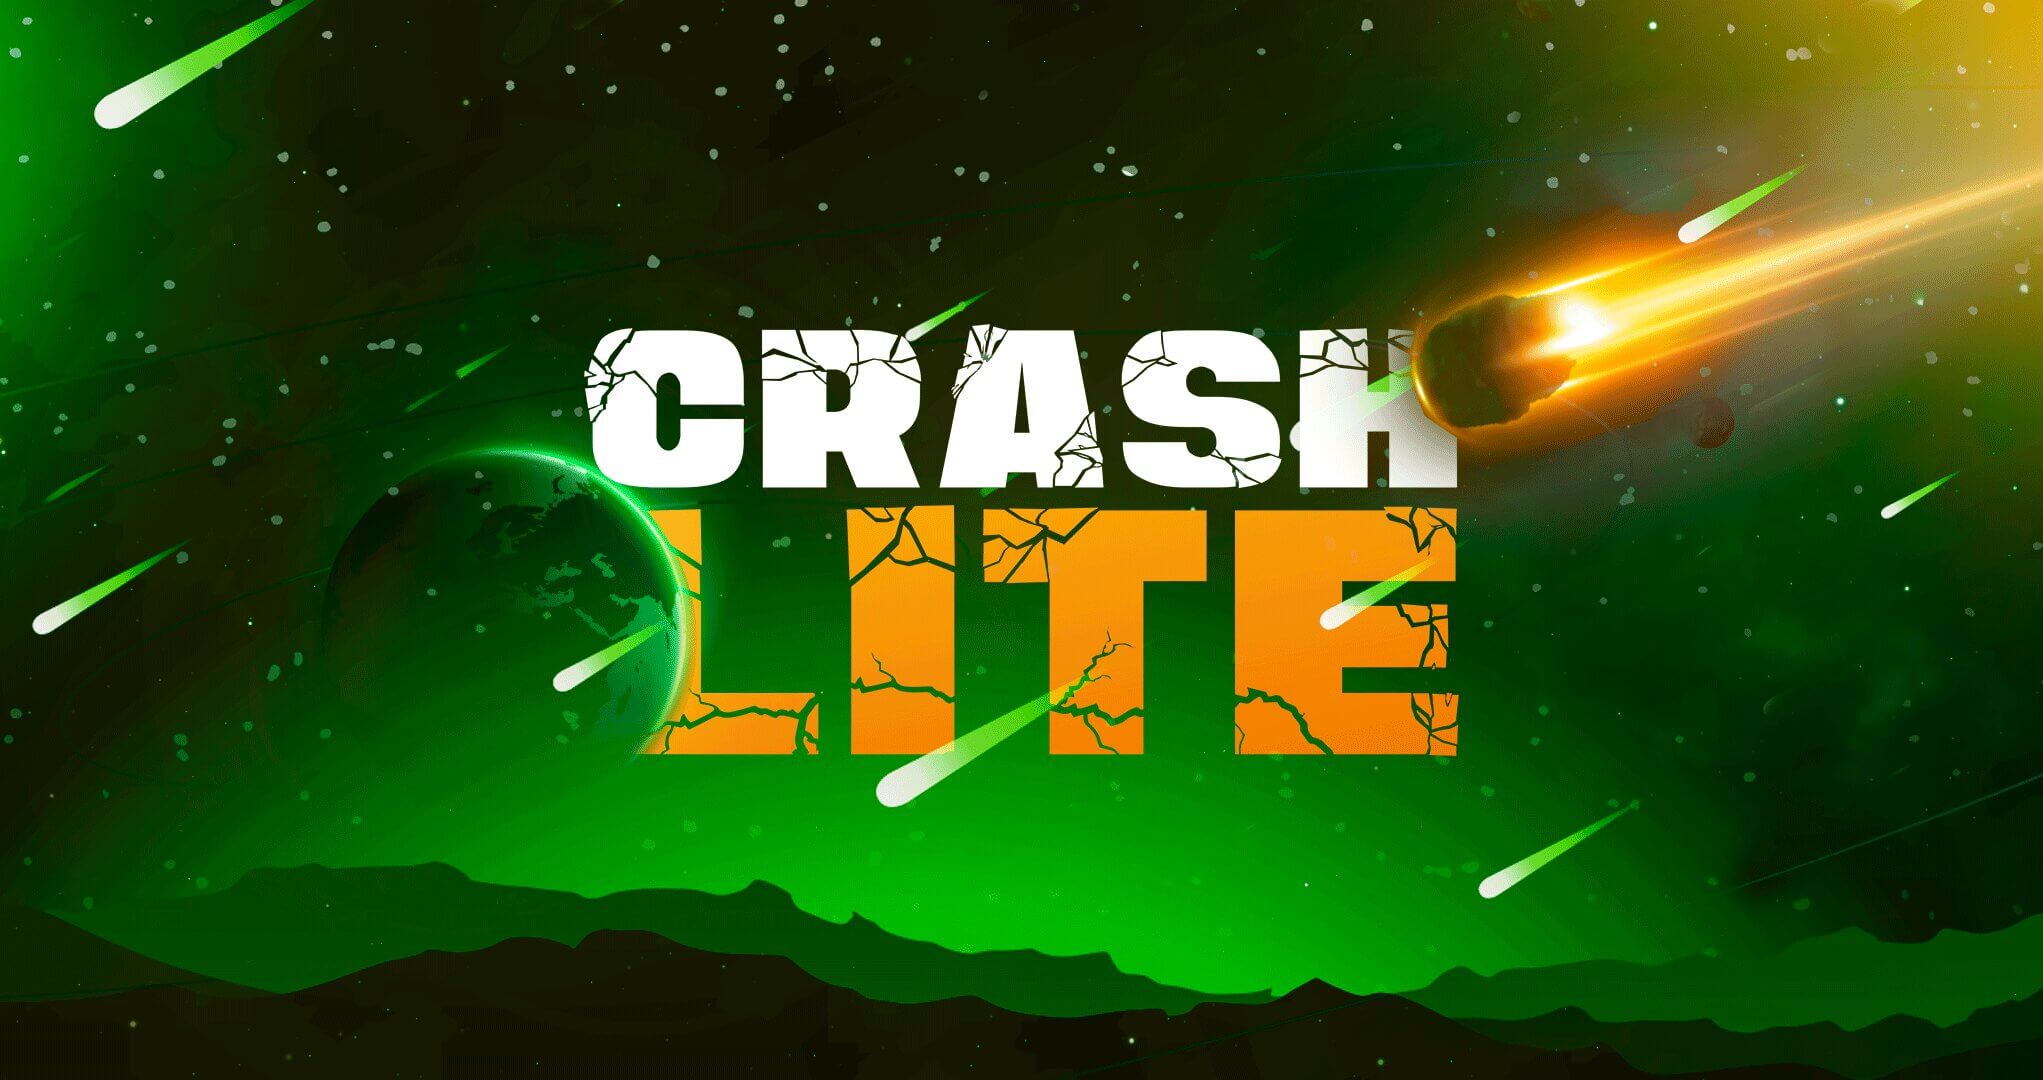 CrashLite